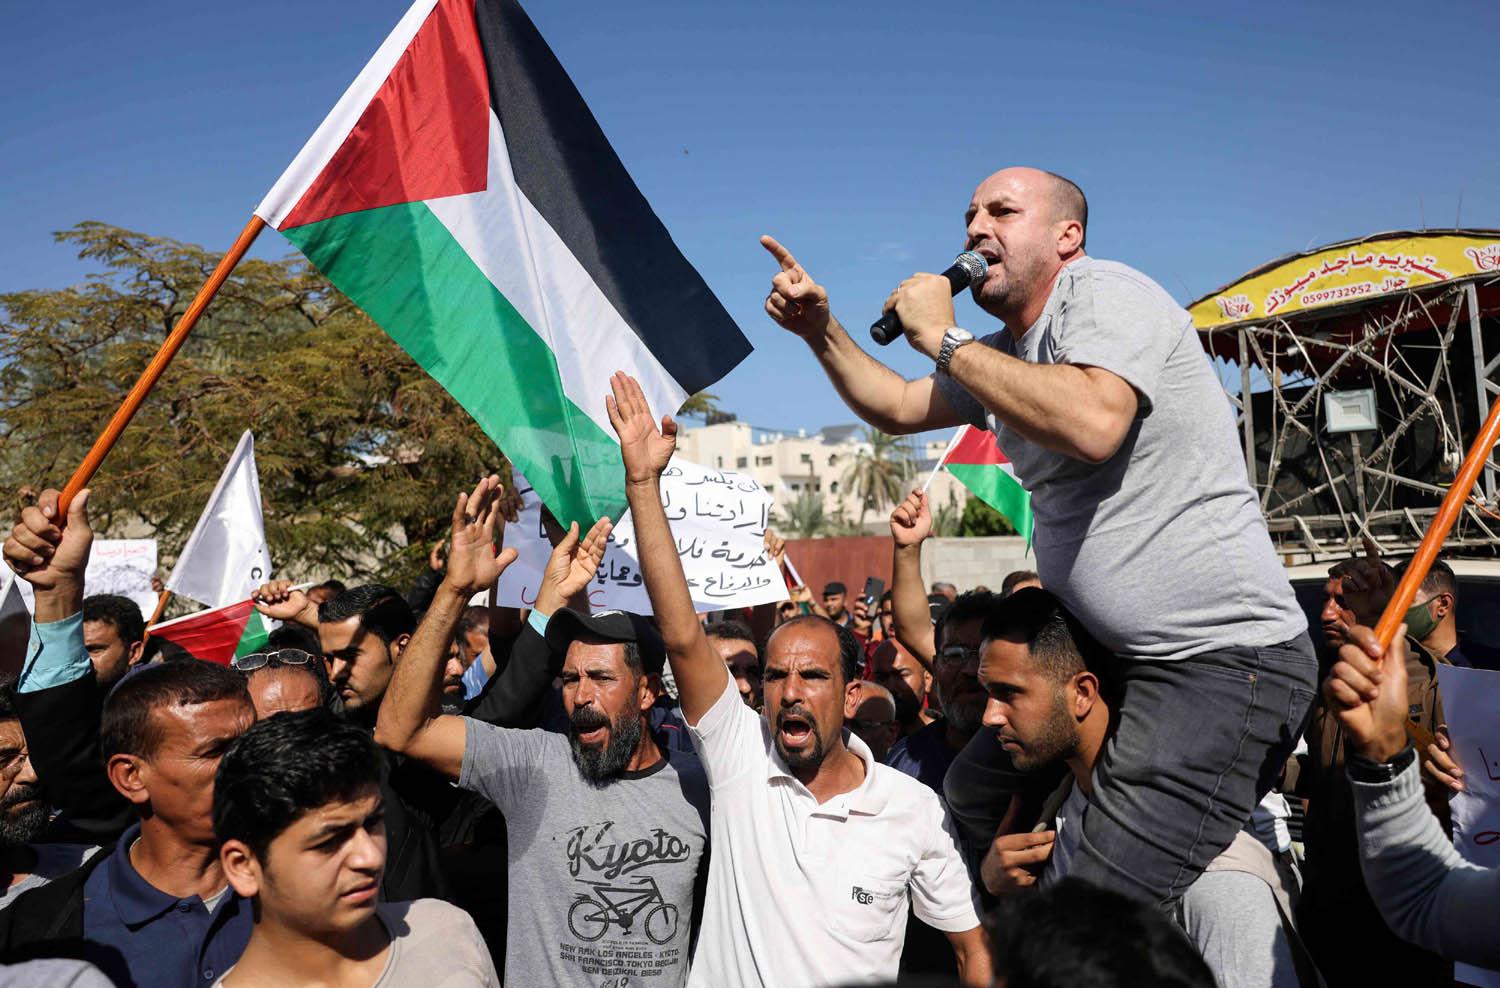 فلسطينيون يتظاهرون احتجاجا على تصنيف منظمات خيرية كإرهابية